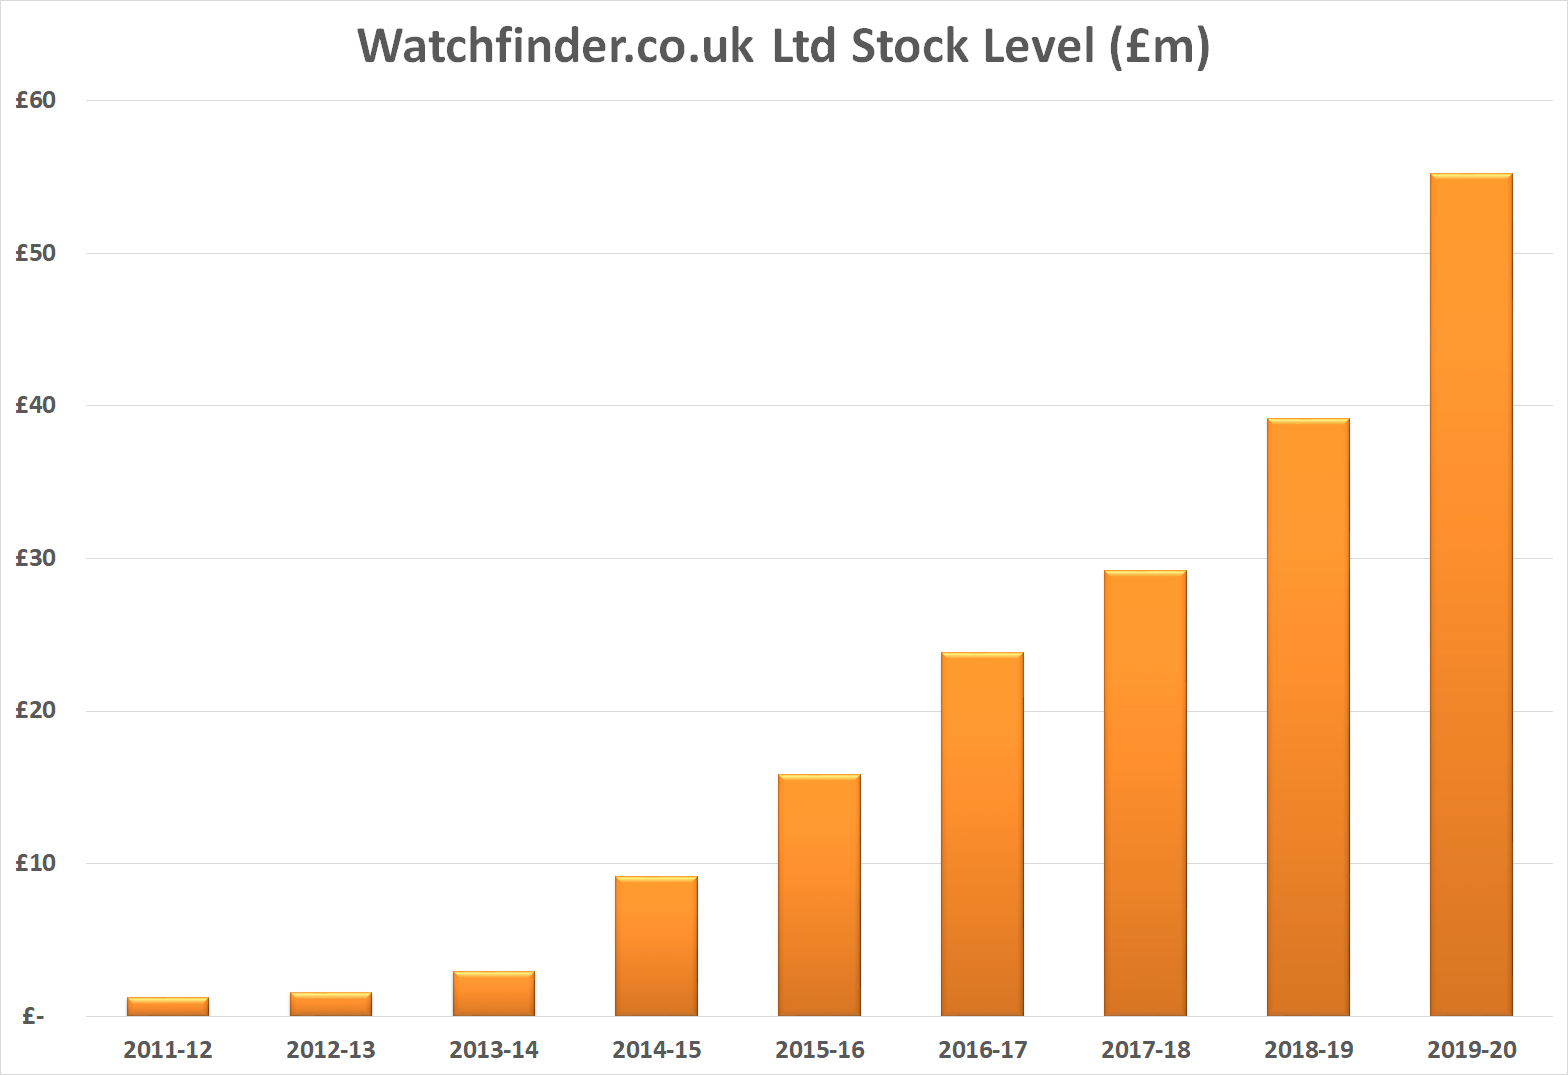 Watchfinder stock level